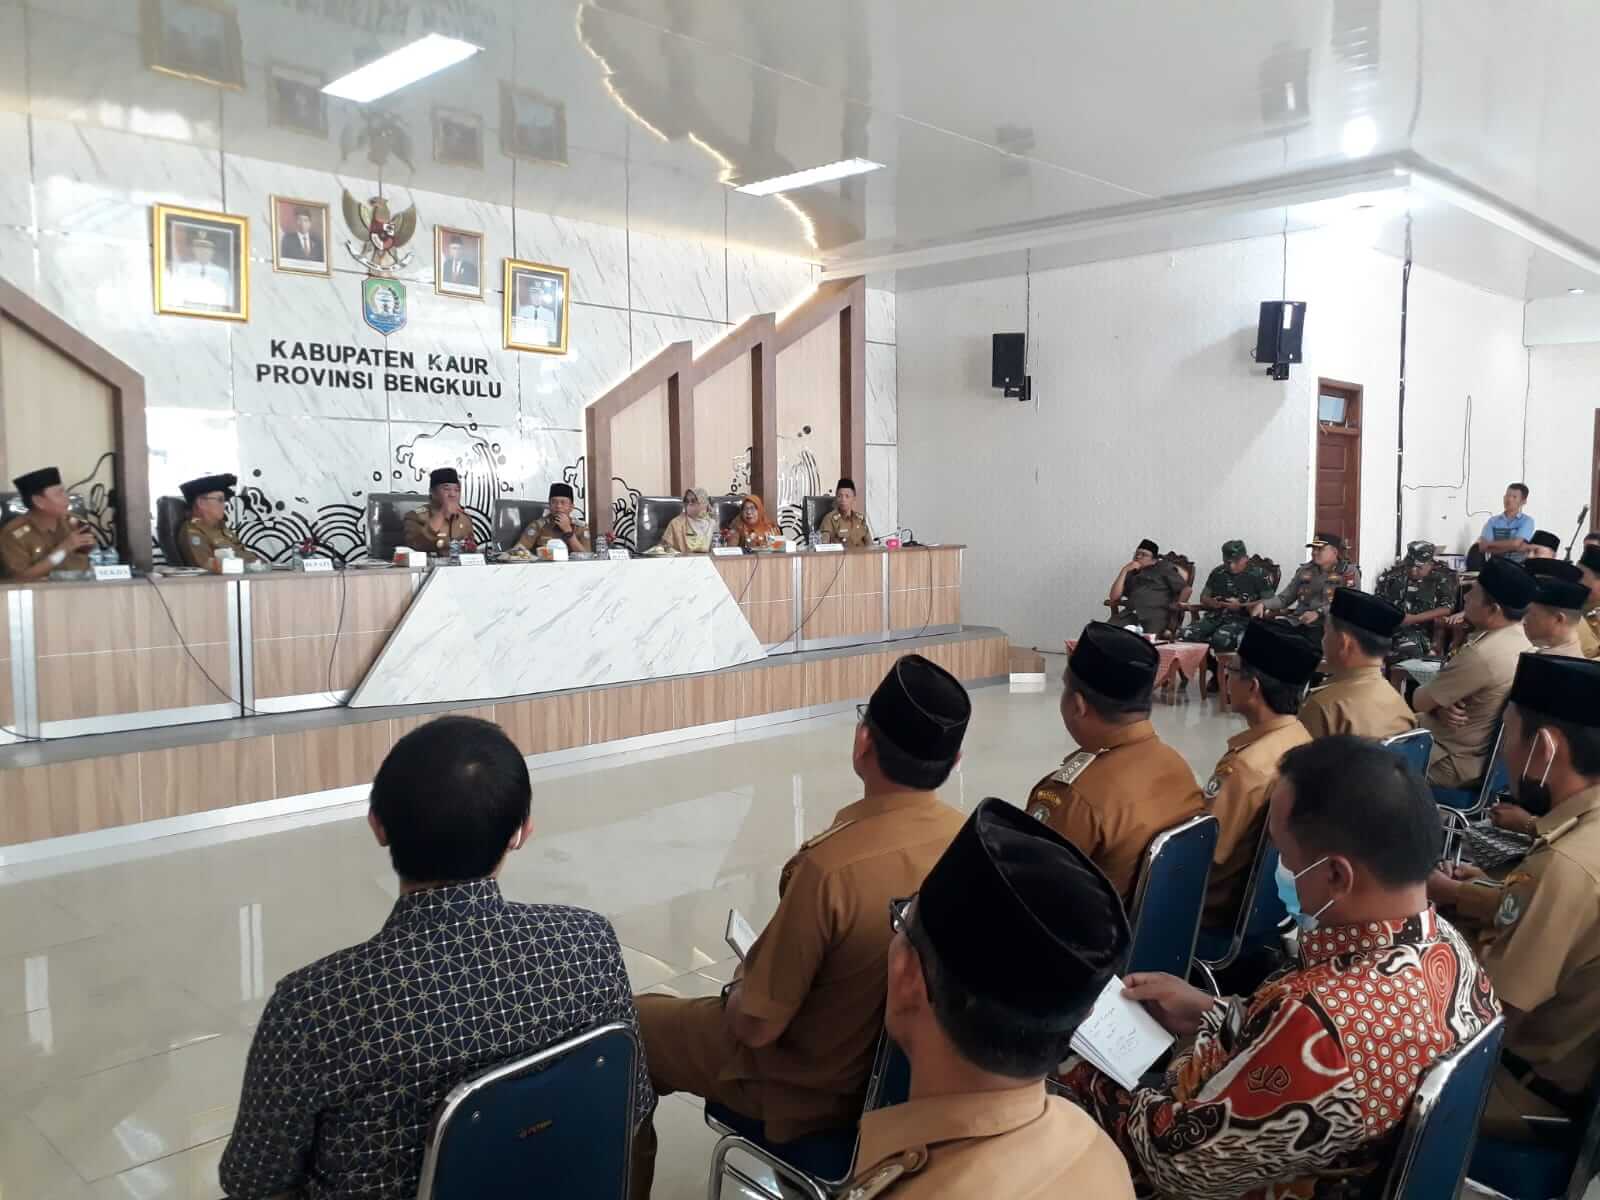 Rosjonsyah: Kaur Termiskin ke-2 se-Provinsi Bengkulu 